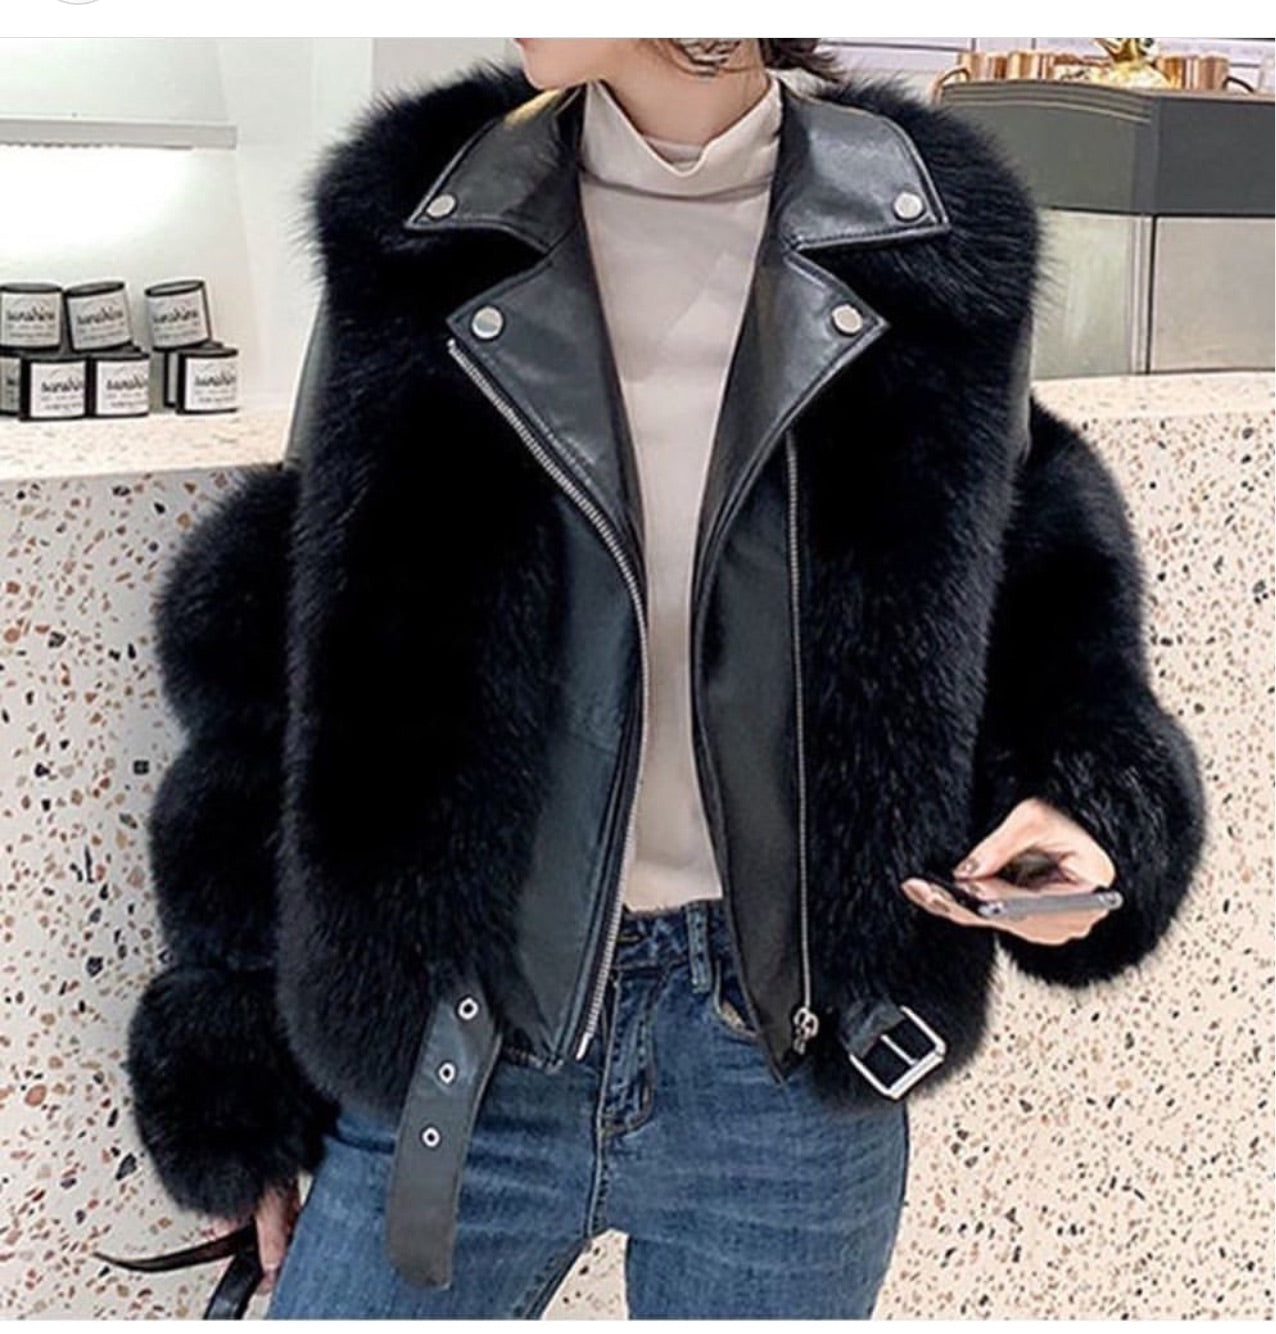 Leather Fur Jacket